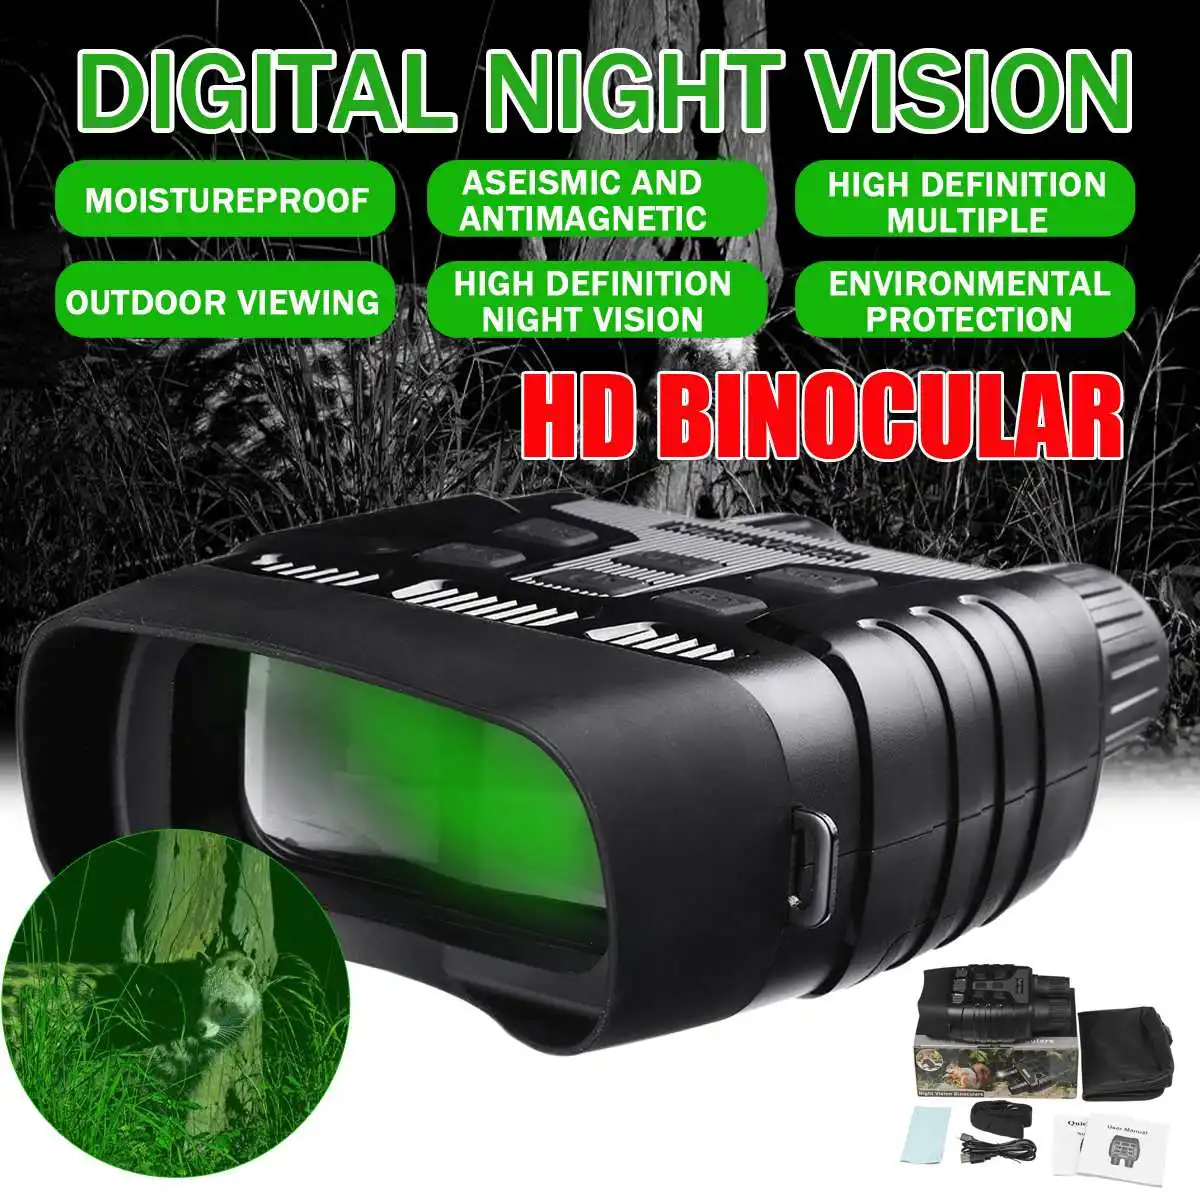 

Бинокль ночного видения, NV-3180 HD, с ЖК-экраном, инфракрасная (ИК) камера, для съемки фото и видео, дальность 300 м, для ночной охоты